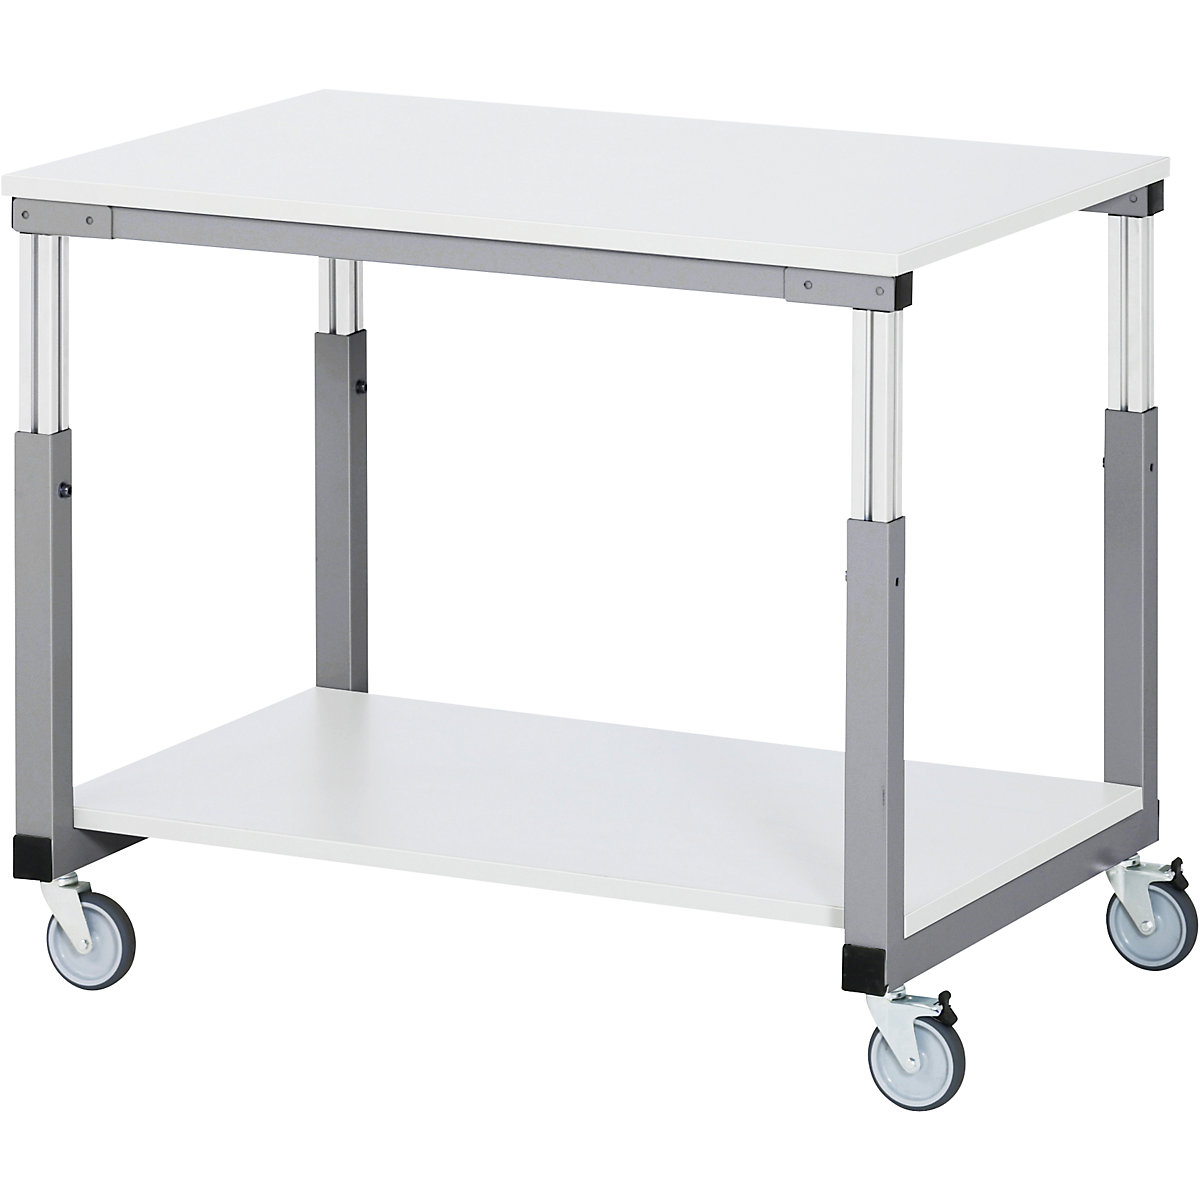 RAU Arbeitsplatz-System, manuell höhenverstellbar von 650 – 1000 mm, Tischwagen mit 4 Lenkrollen, BxT 1000 x 700 mm